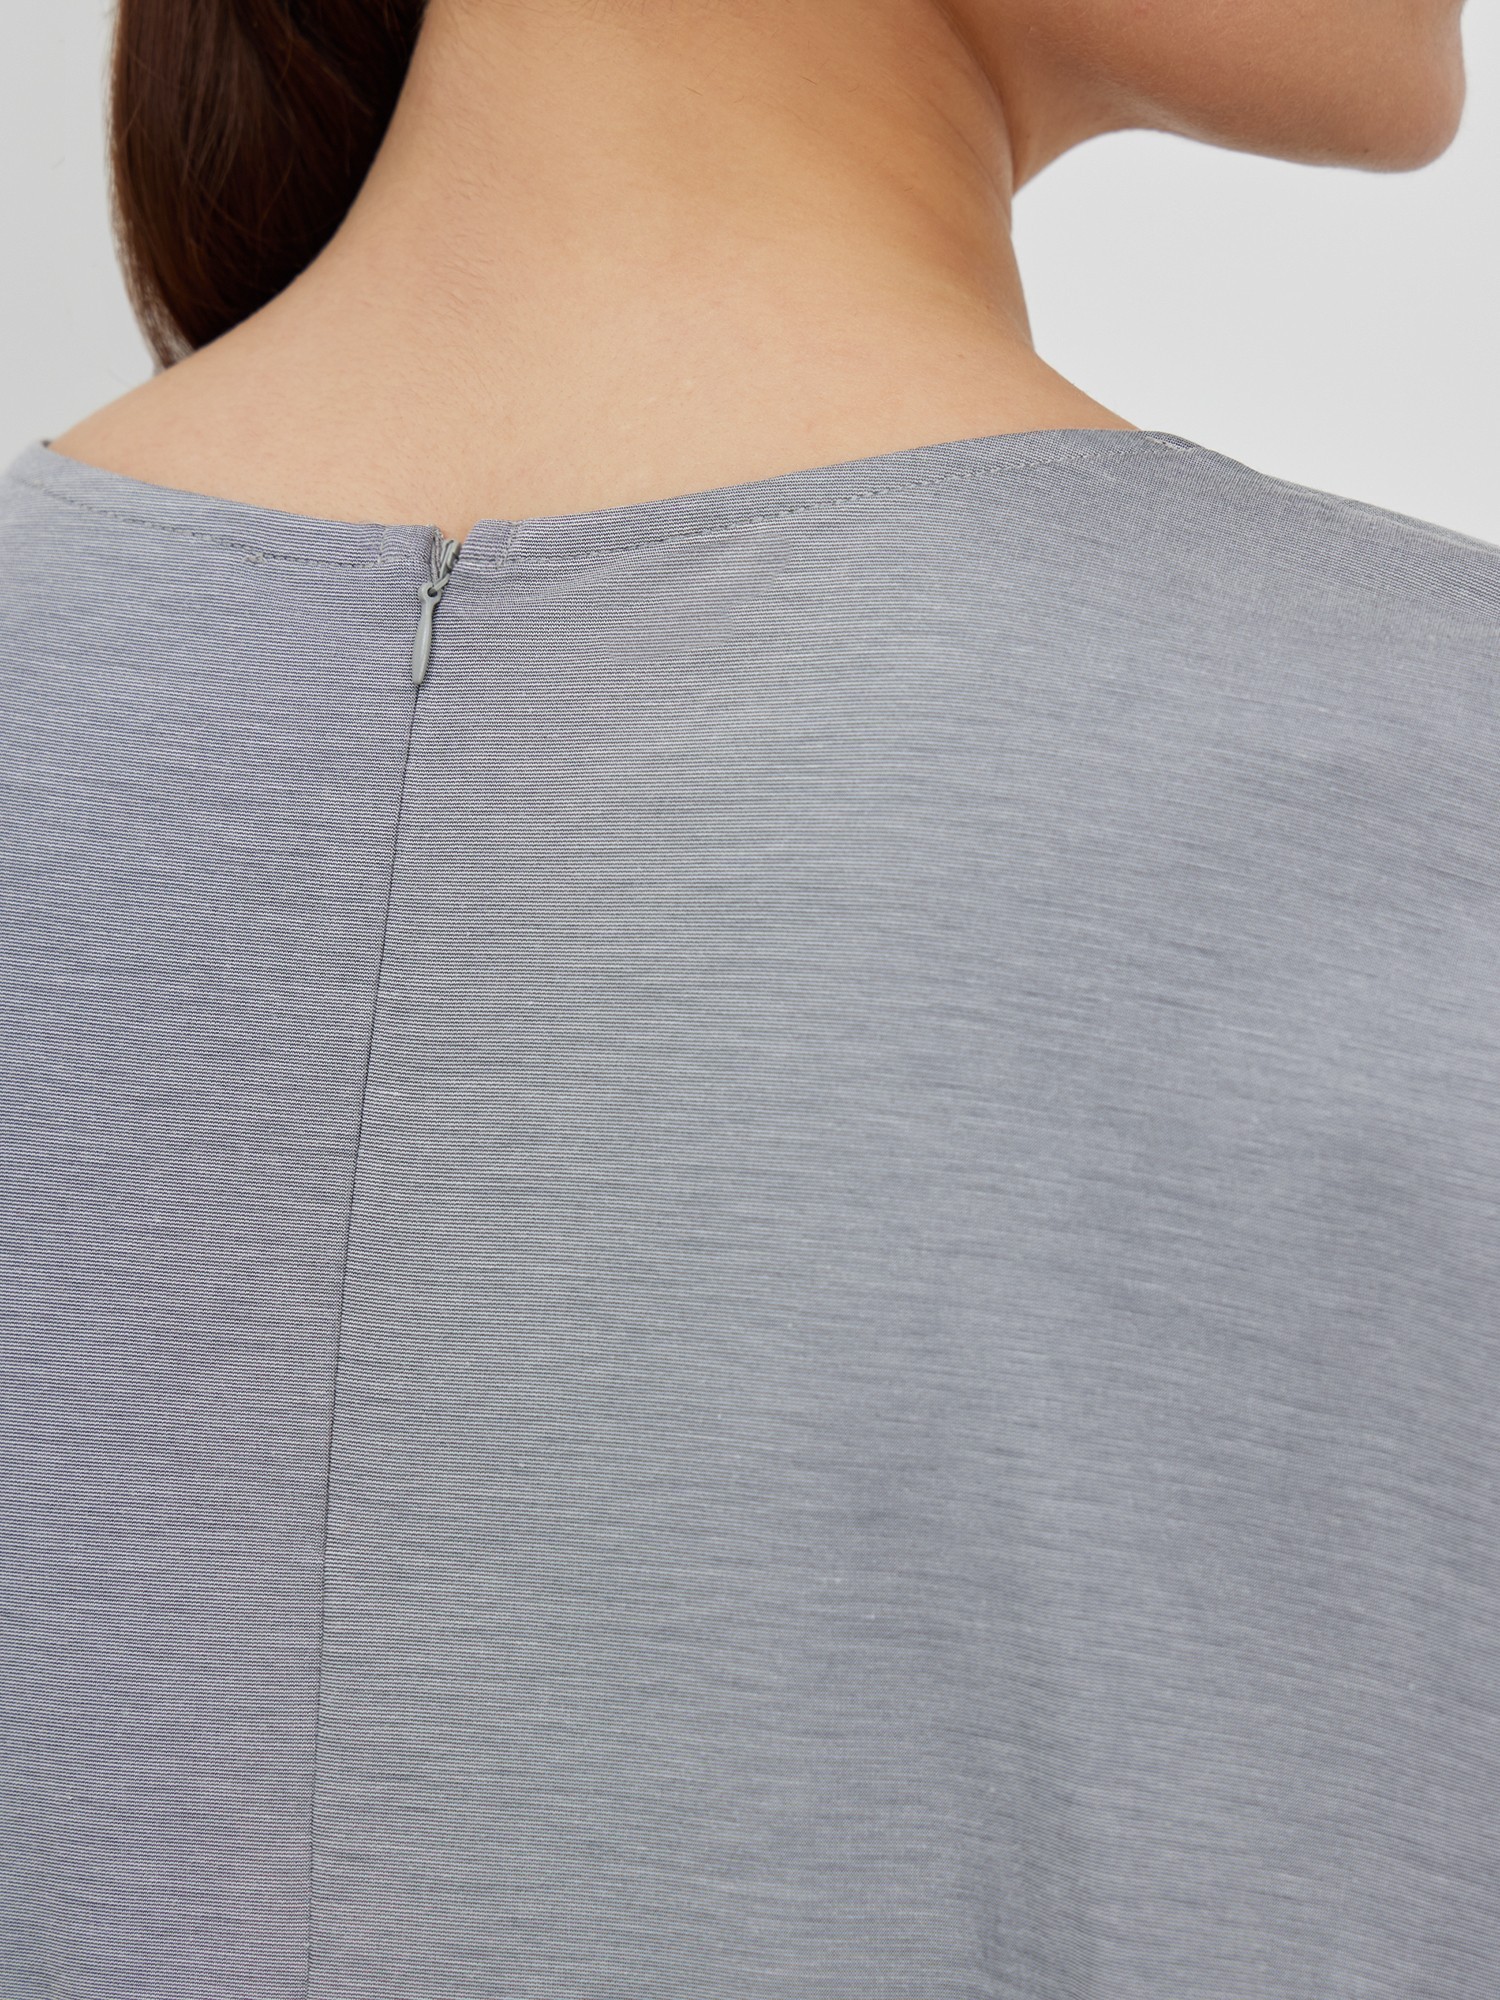 Блуза трикотажная с декором Lalis BL0691K, цвет серый меланж, размер 50 - фото 5